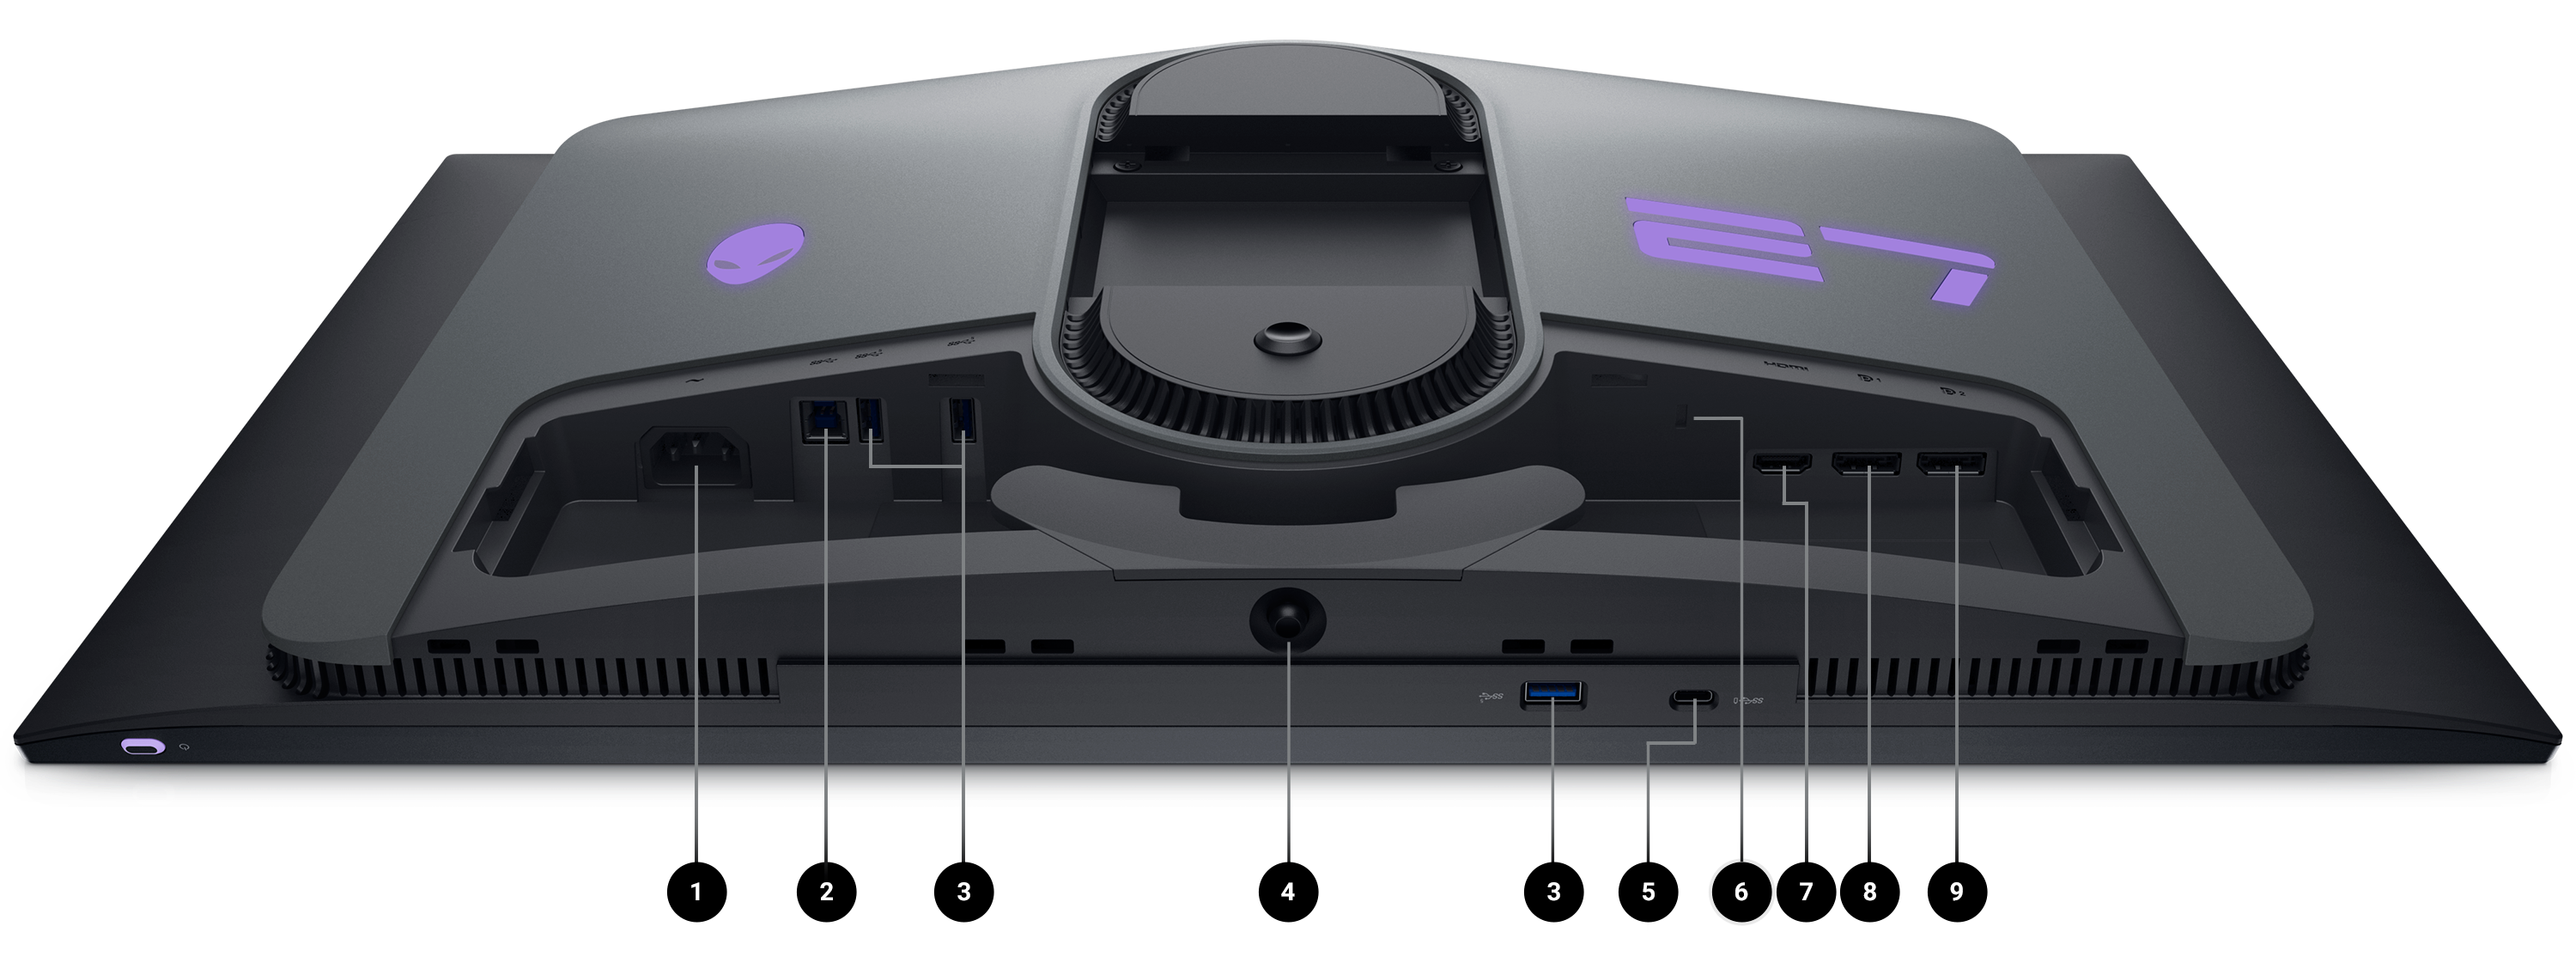 Auf dem Bildschirm liegender Dell Gamingmonitor AW2725DF; die verfügbaren Anschlüsse sind mit Zahlen von 1 bis 9 gekennzeichnet.